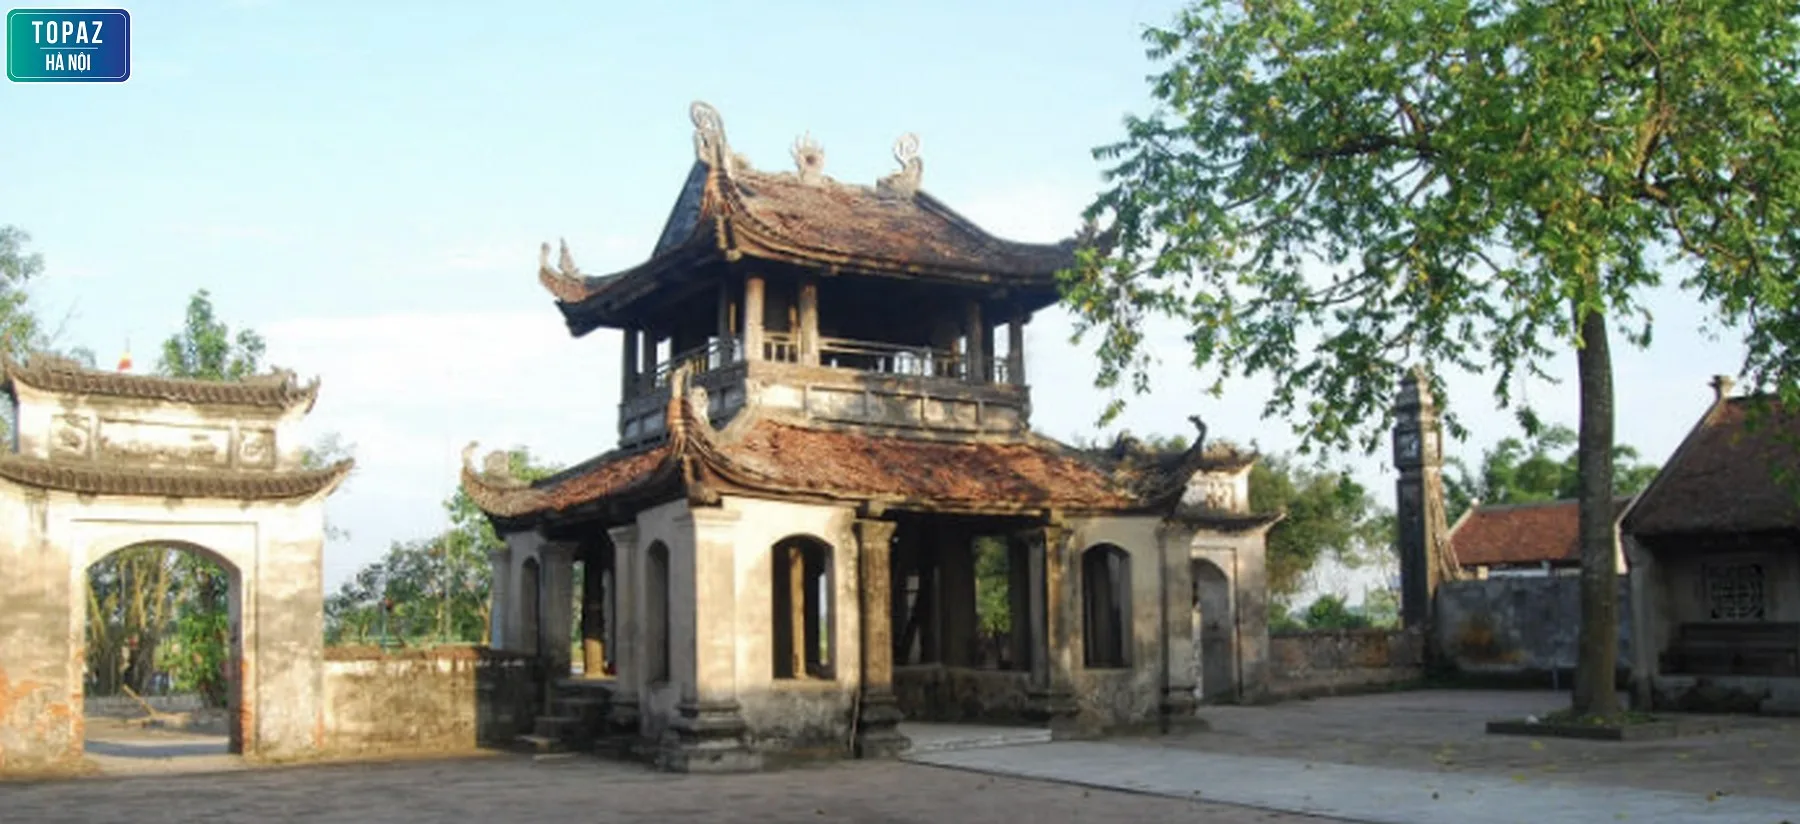 Chùa Đậu – Chốn linh thiêng ẩn mình giữa ngoại thành Hà Nội 